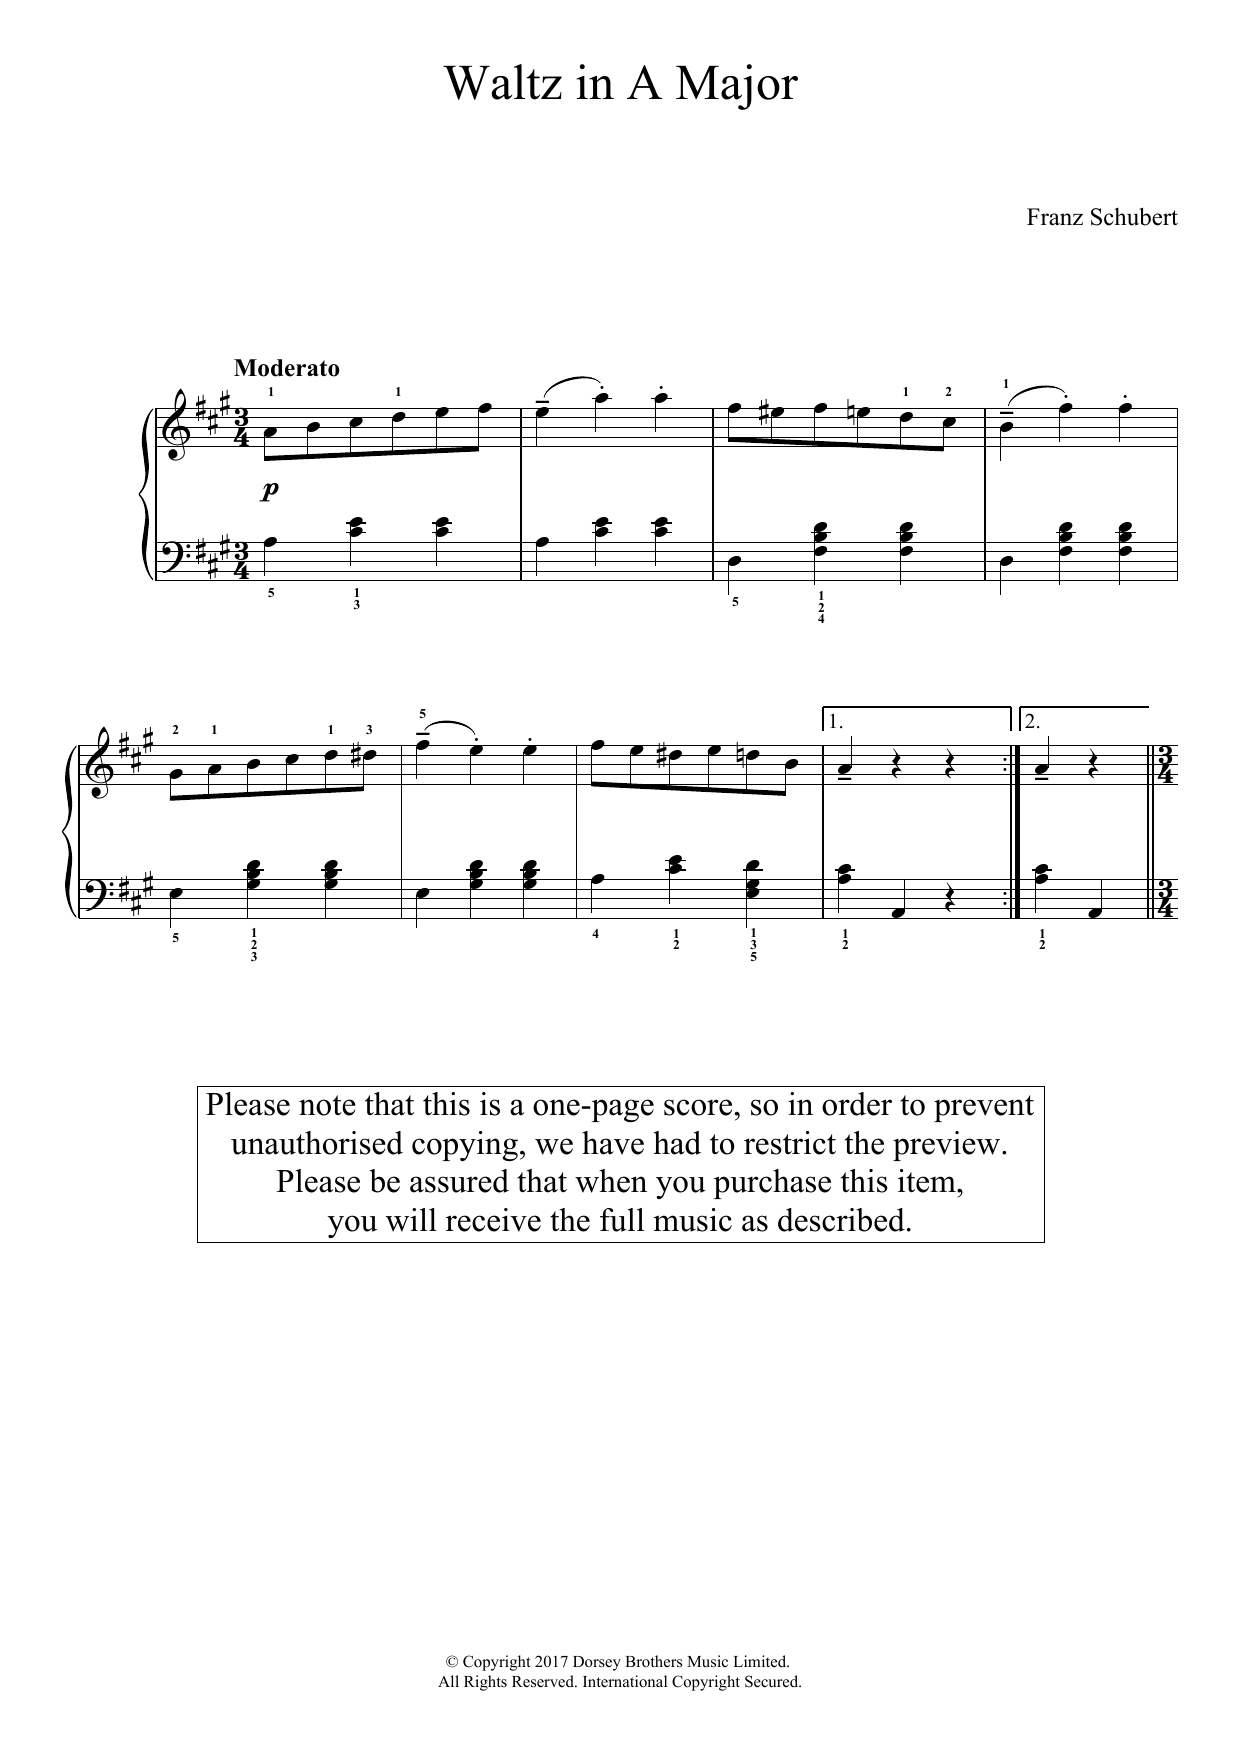 Download Franz Schubert Waltz In A Major Sheet Music